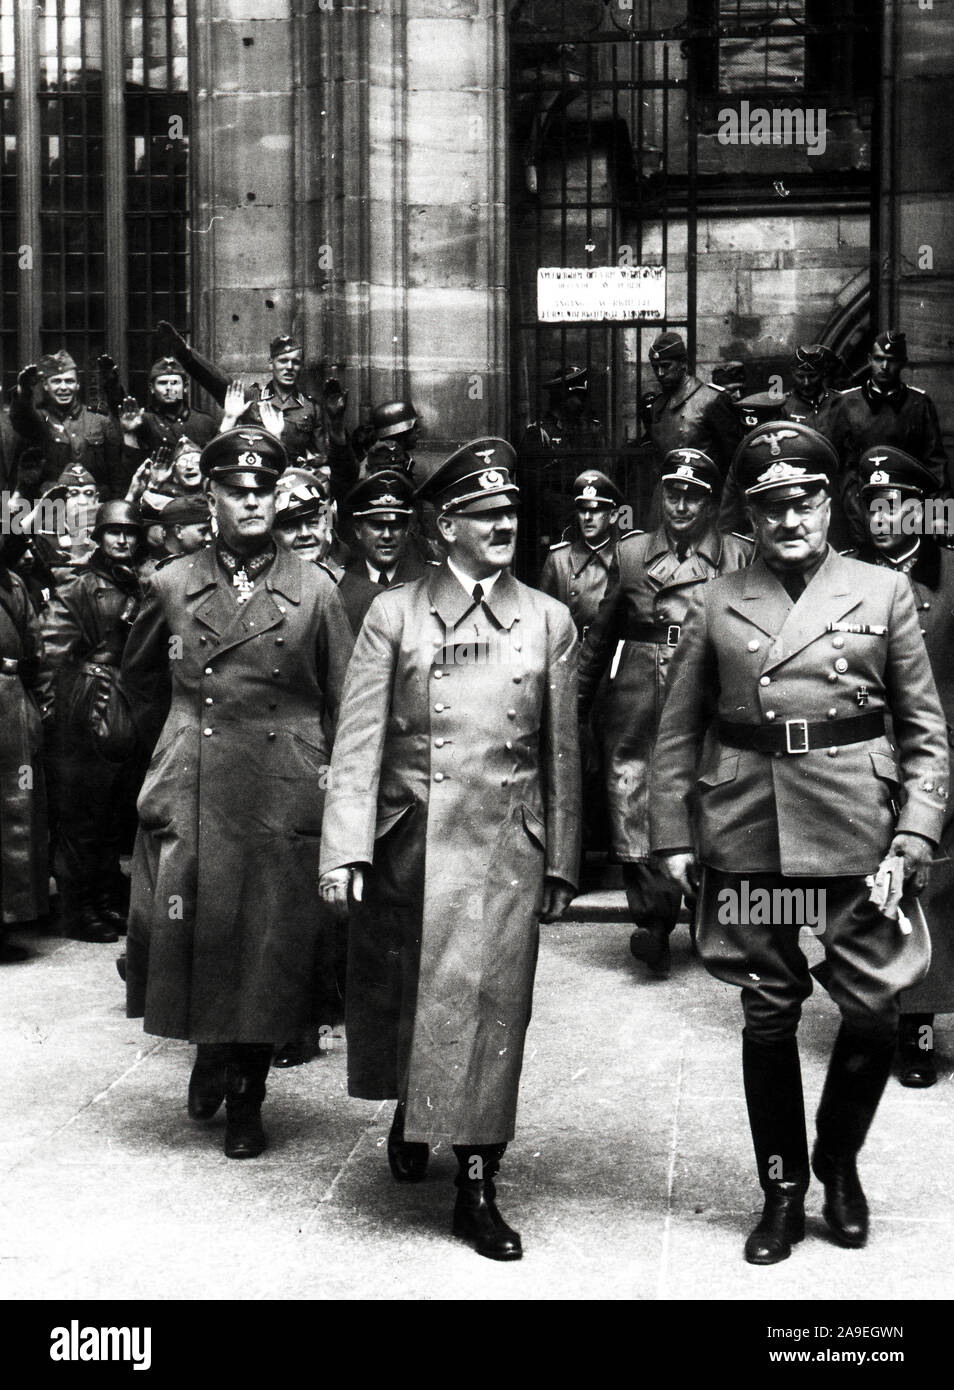 Eva Braun Sammlung (ossam) - Adolf Hitler in Uniform mit deutschen Soldaten oder Offiziere Ca. 1930s oder 1940s Stockfoto